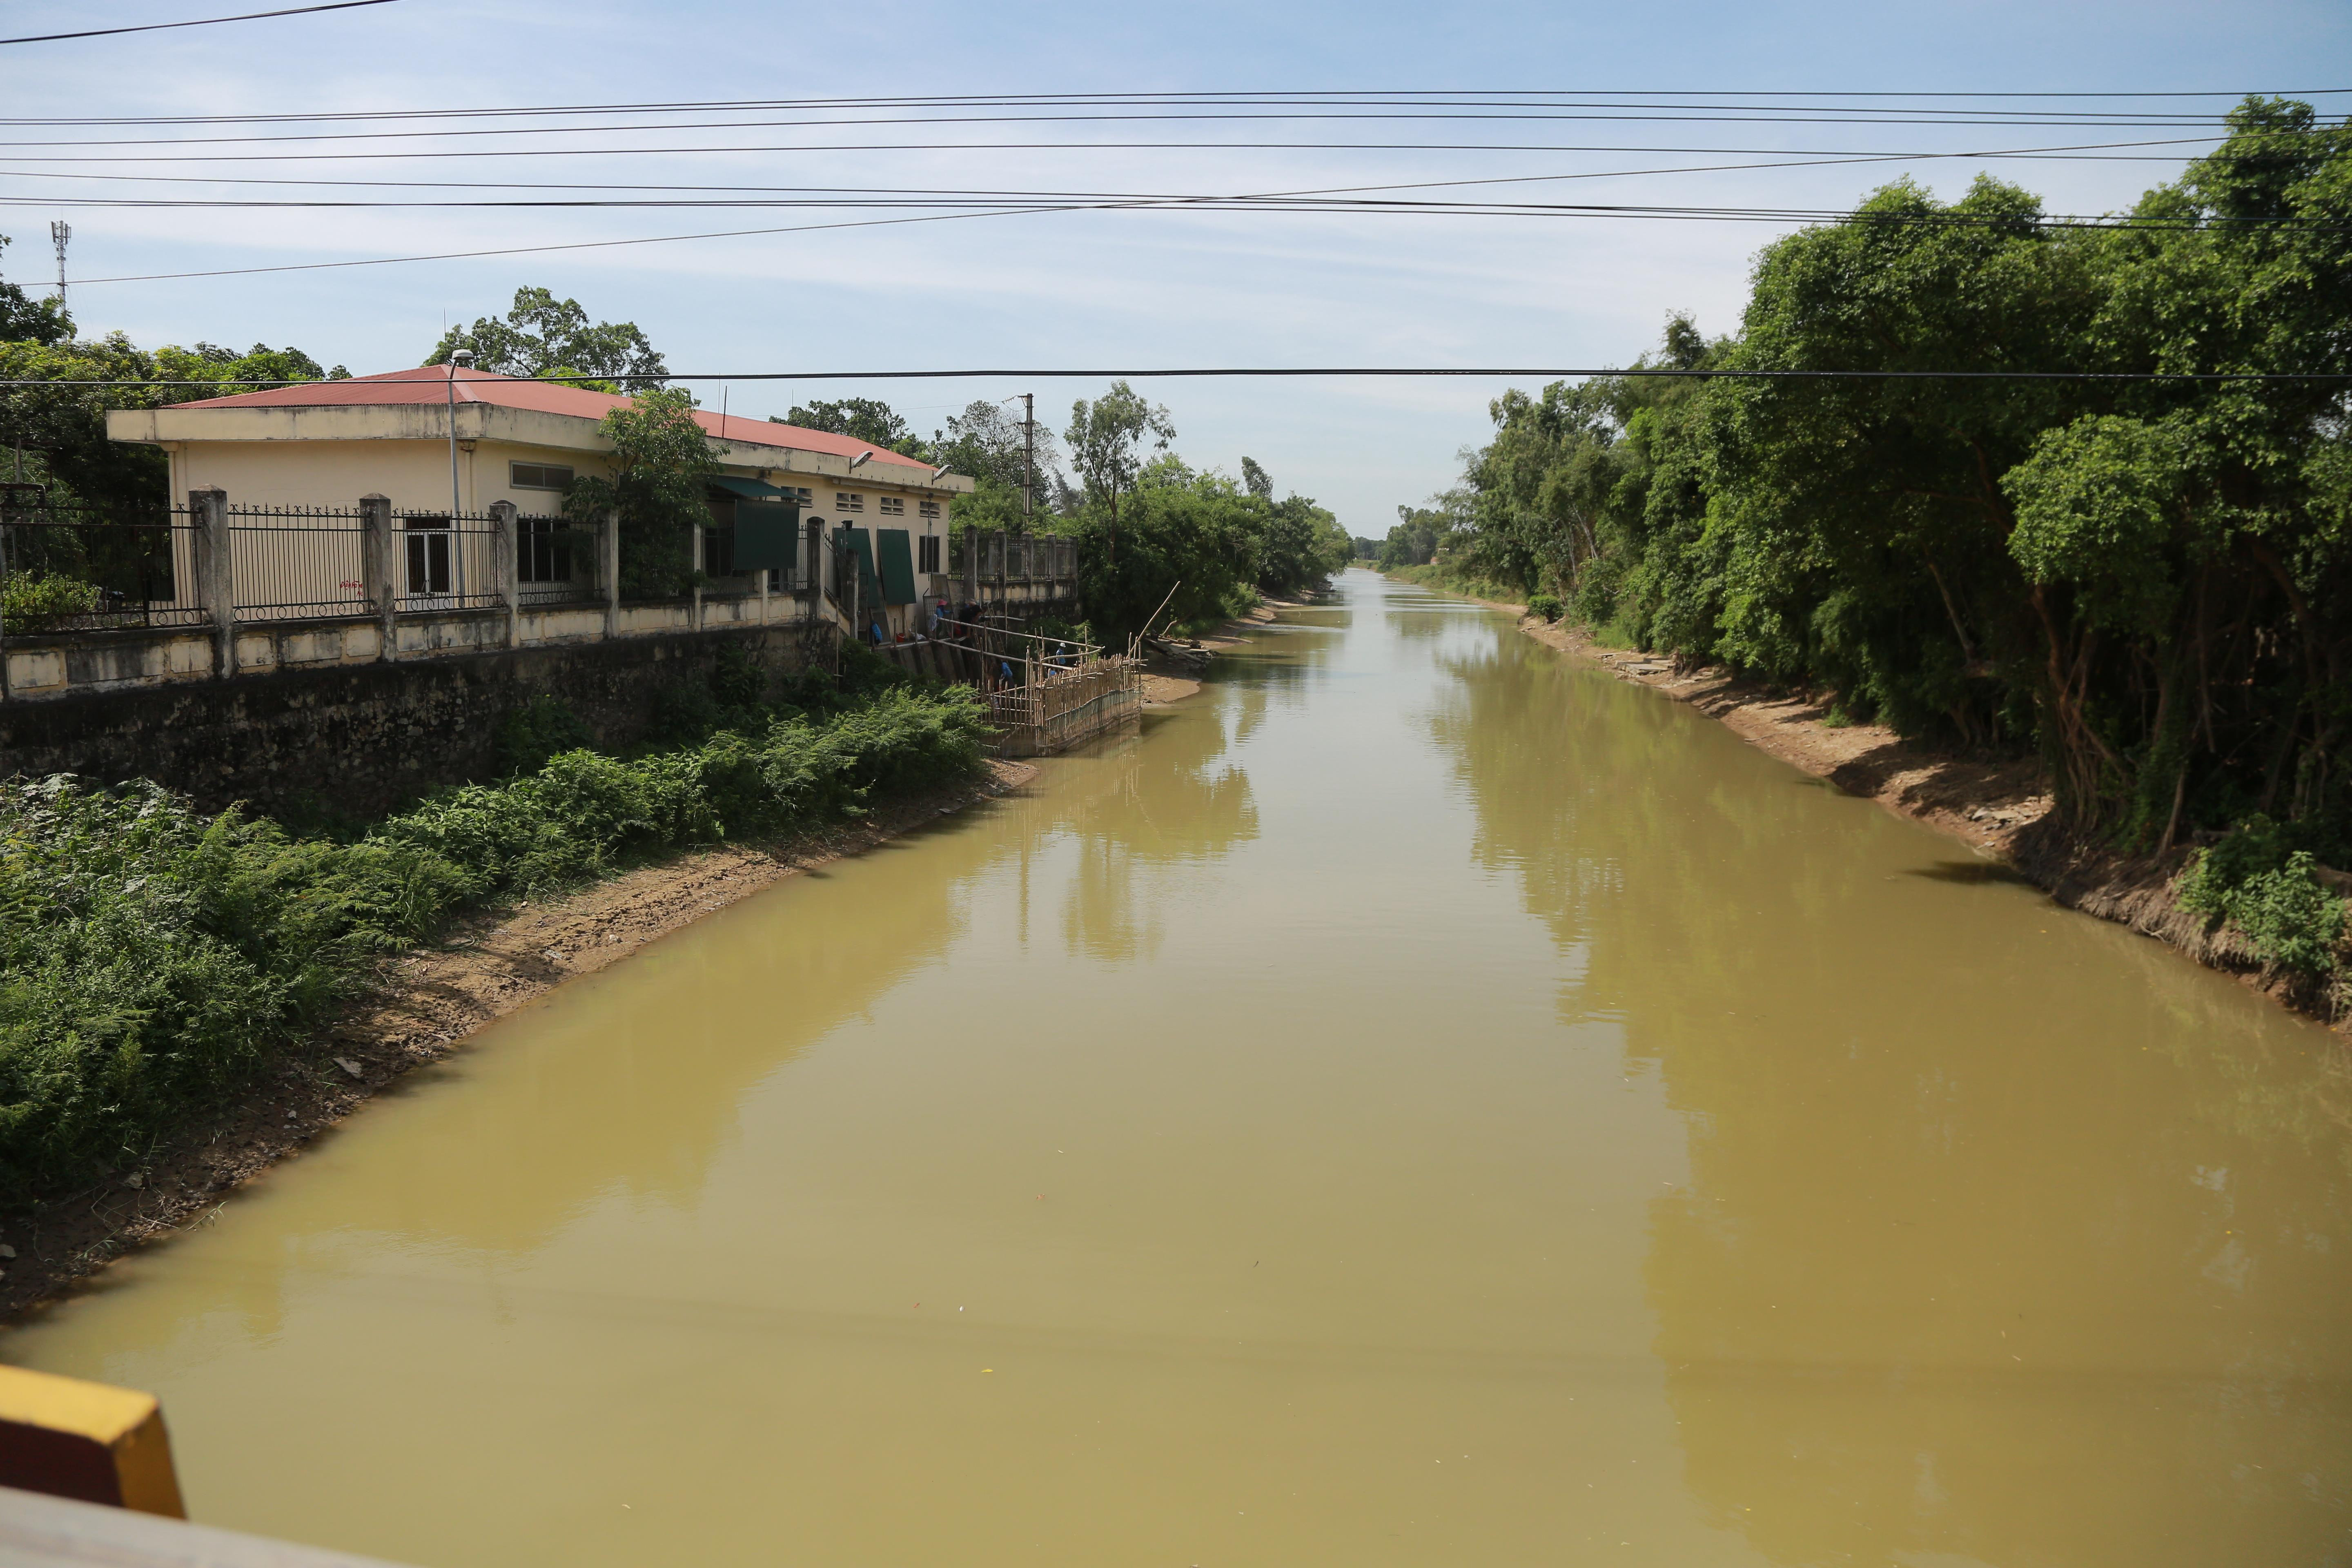 Dòng sông Đào, nơi Công ty CP Cấp nước Nghệ An có các hoạt động khai thác, sử dụng sản xuất nước sinh hoạt. Ảnh: Đào Tuấn